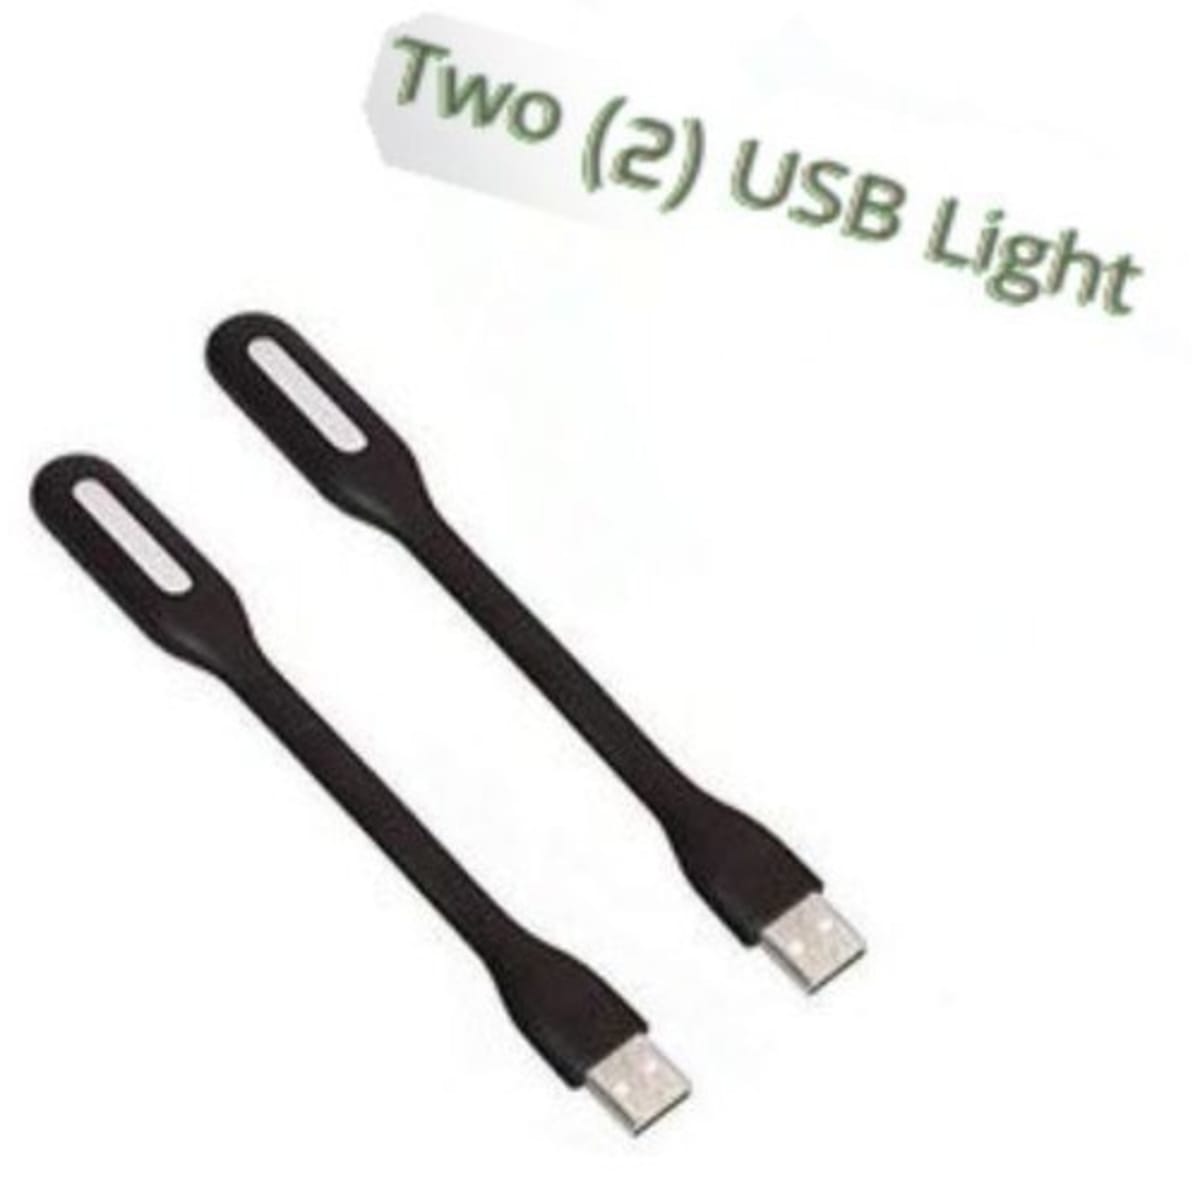 Flexible Usb Led Light - 2pcs